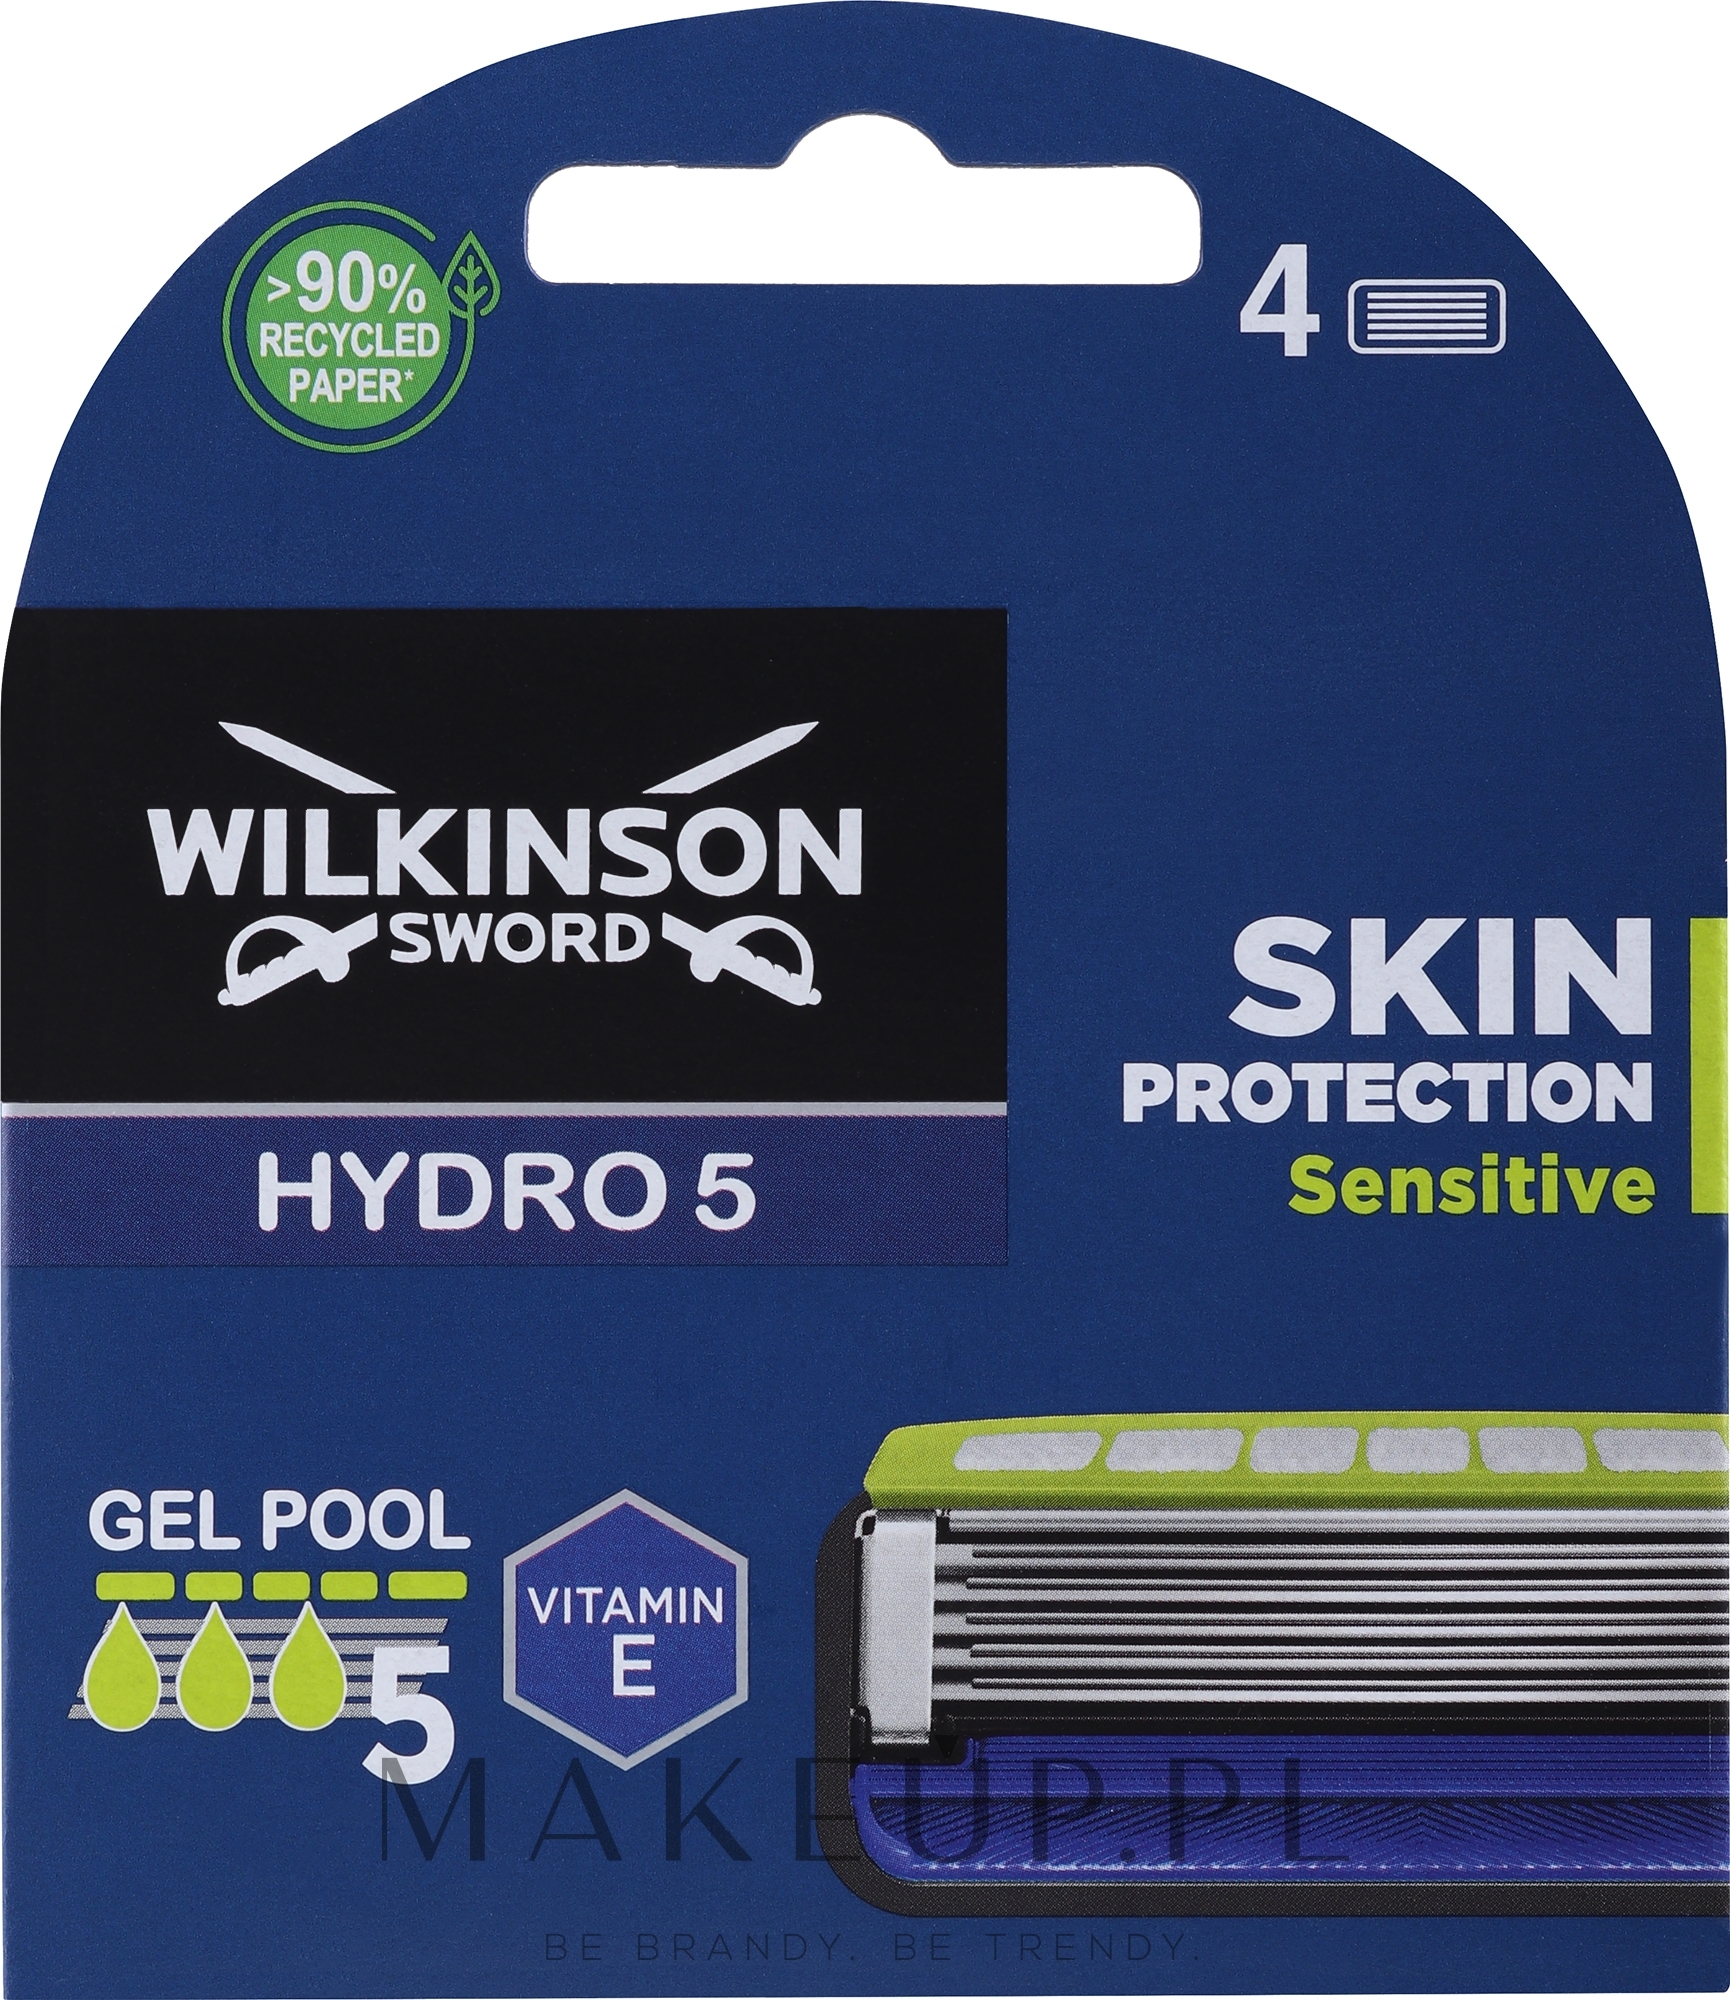 Zapasowe ostrza do golenia, 4 szt. - Wilkinson Sword Hydro 5 Sensitive — Zdjęcie 4 szt.